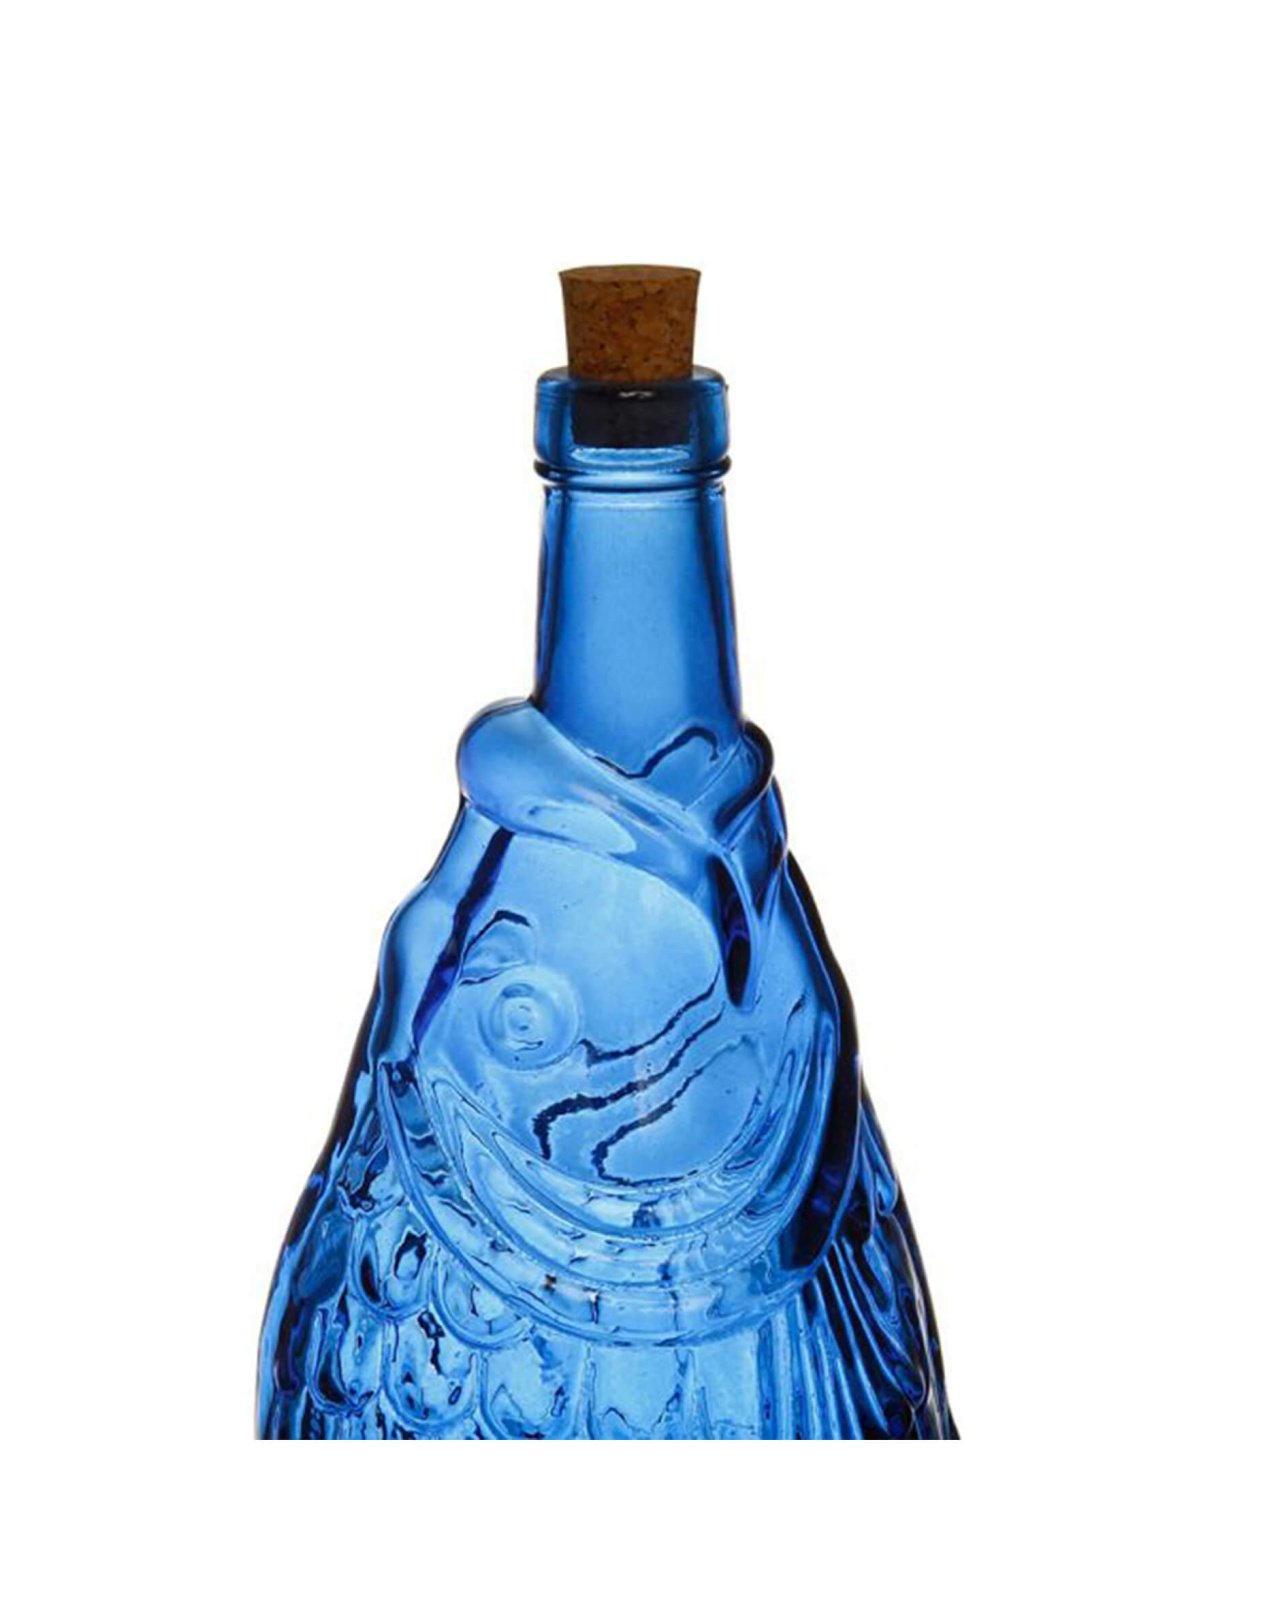 Piscis Bottle Blue